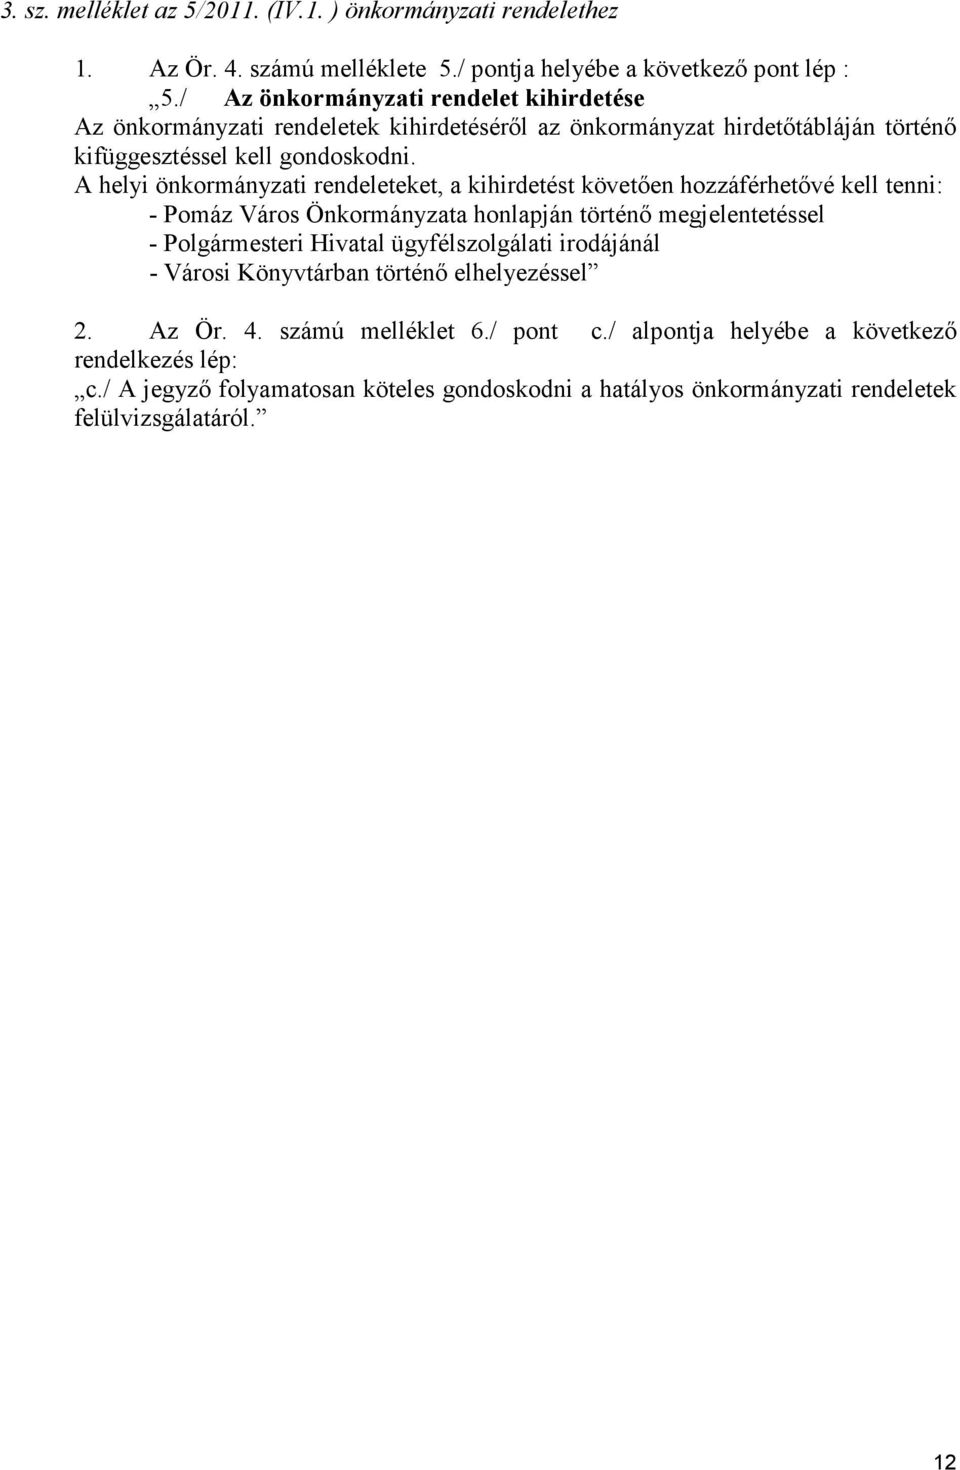 A helyi önkormányzati rendeleteket, a kihirdetést követıen hozzáférhetıvé kell tenni: - Pomáz Város Önkormányzata honlapján történı megjelentetéssel - Polgármesteri Hivatal